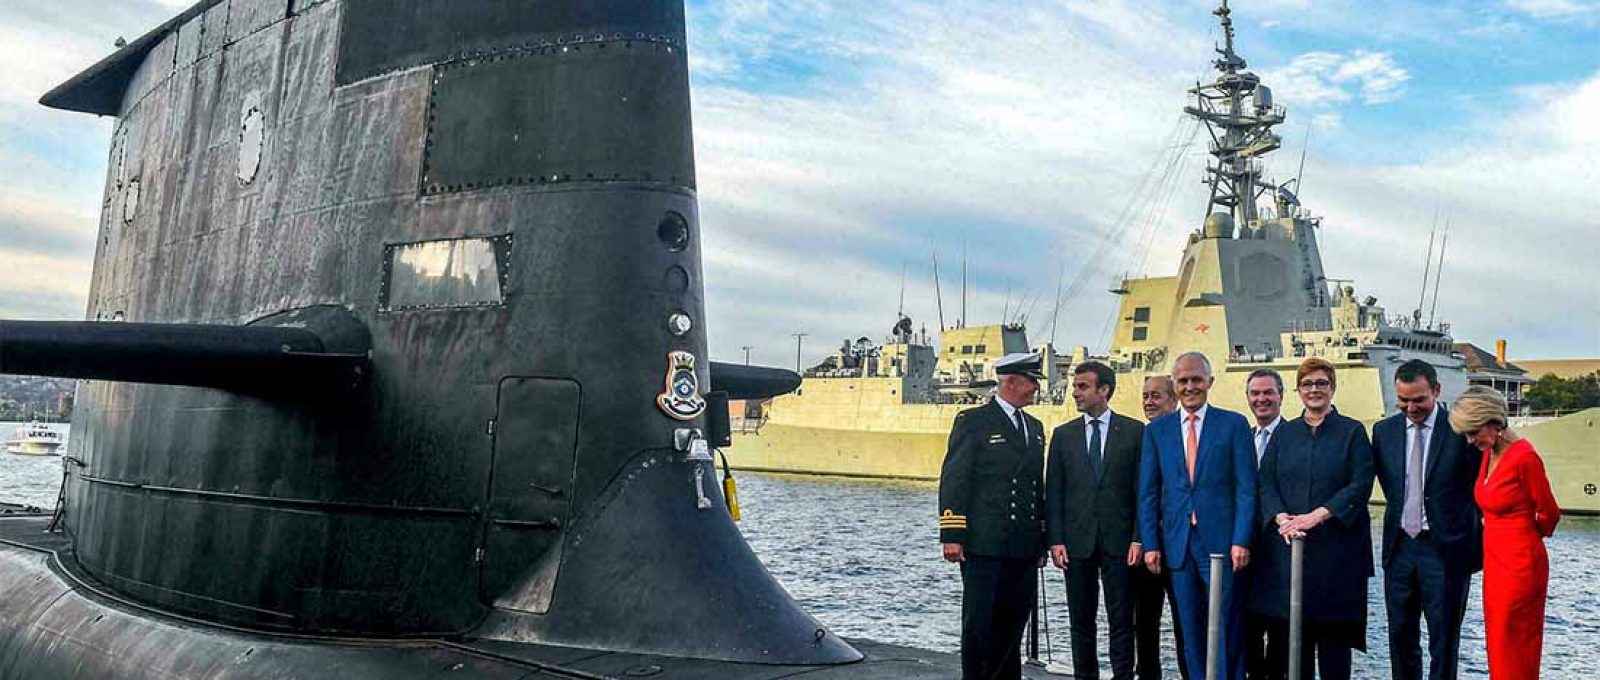 O presidente francês, Emmanuel Macron, e o então primeiro-ministro australiano, Malcolm Turnbull, no convés do HMAS Waller, um submarino classe Collins da Marinha Real da Austrália, em Sydney, maio de 2018 (Foto: Brendan Esposito/AFP).